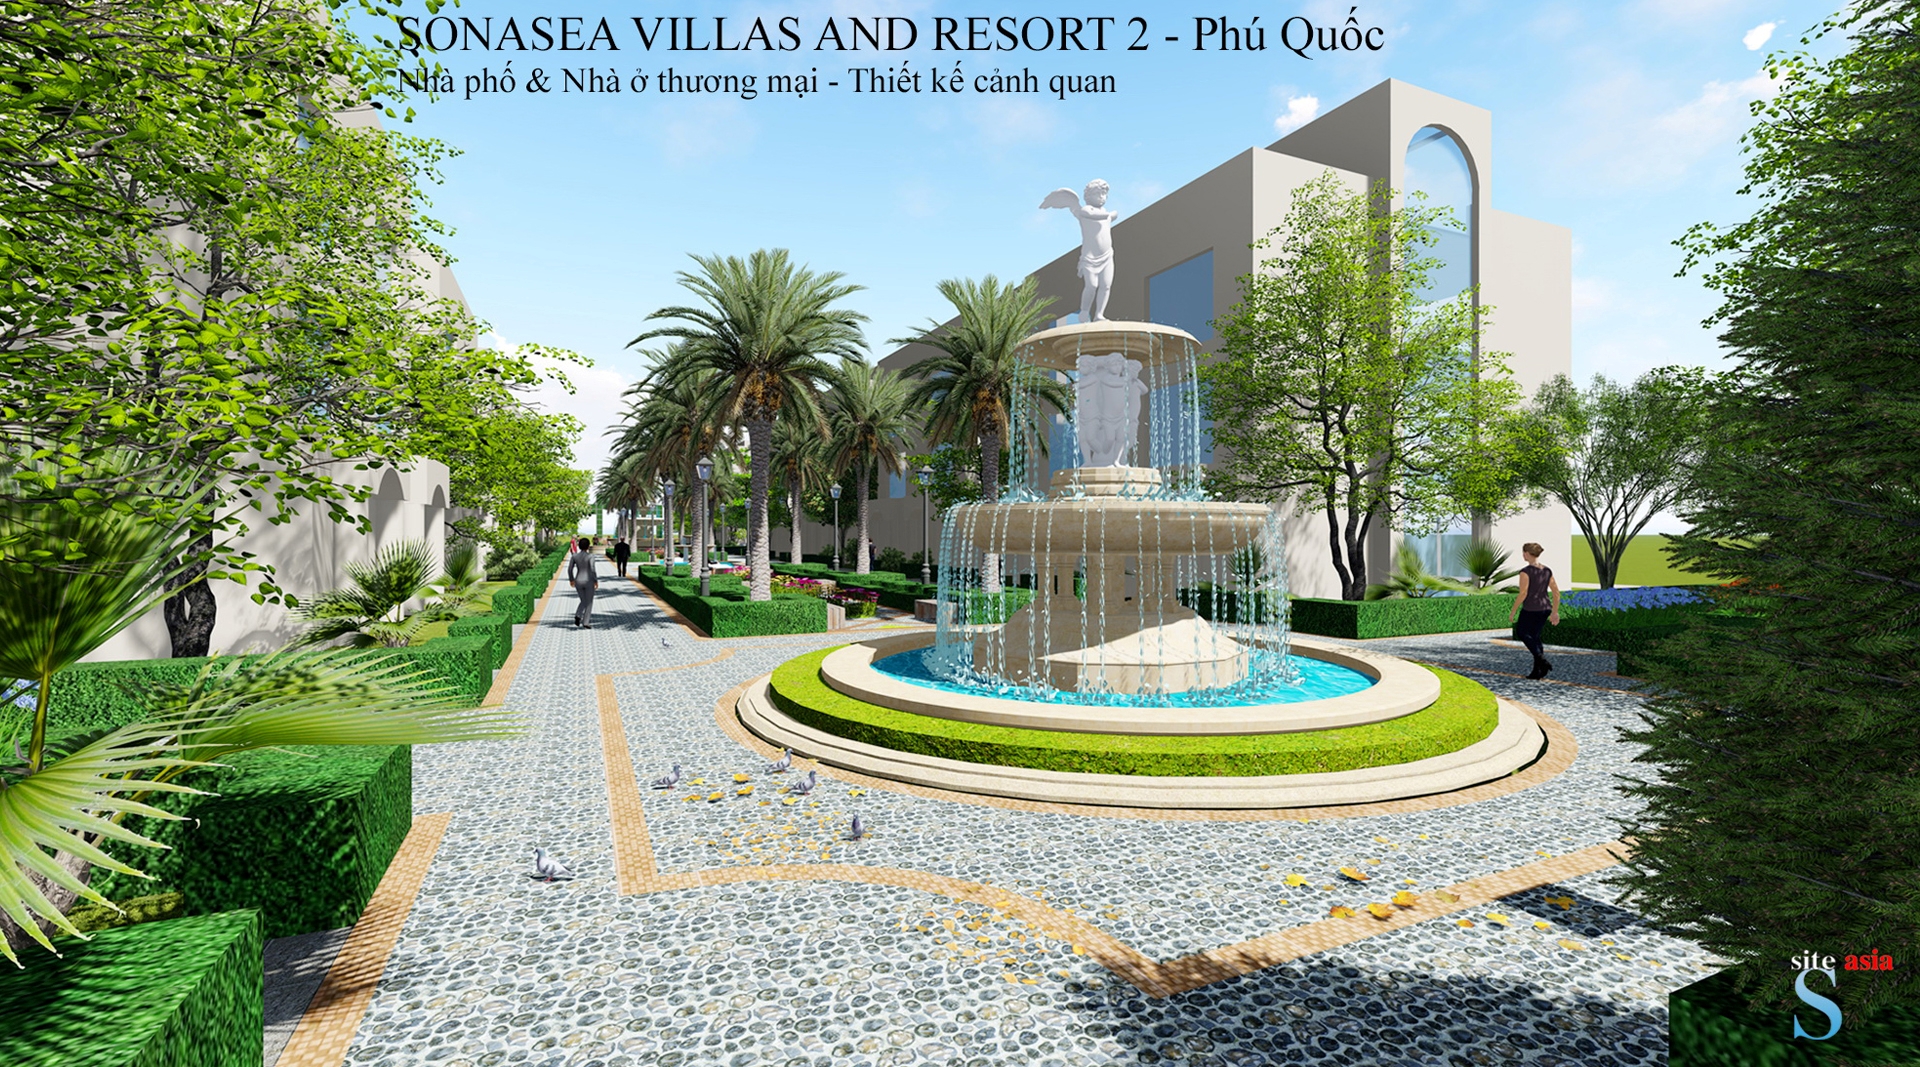 Sonasea Villas & Resort 2, Phú Quốc